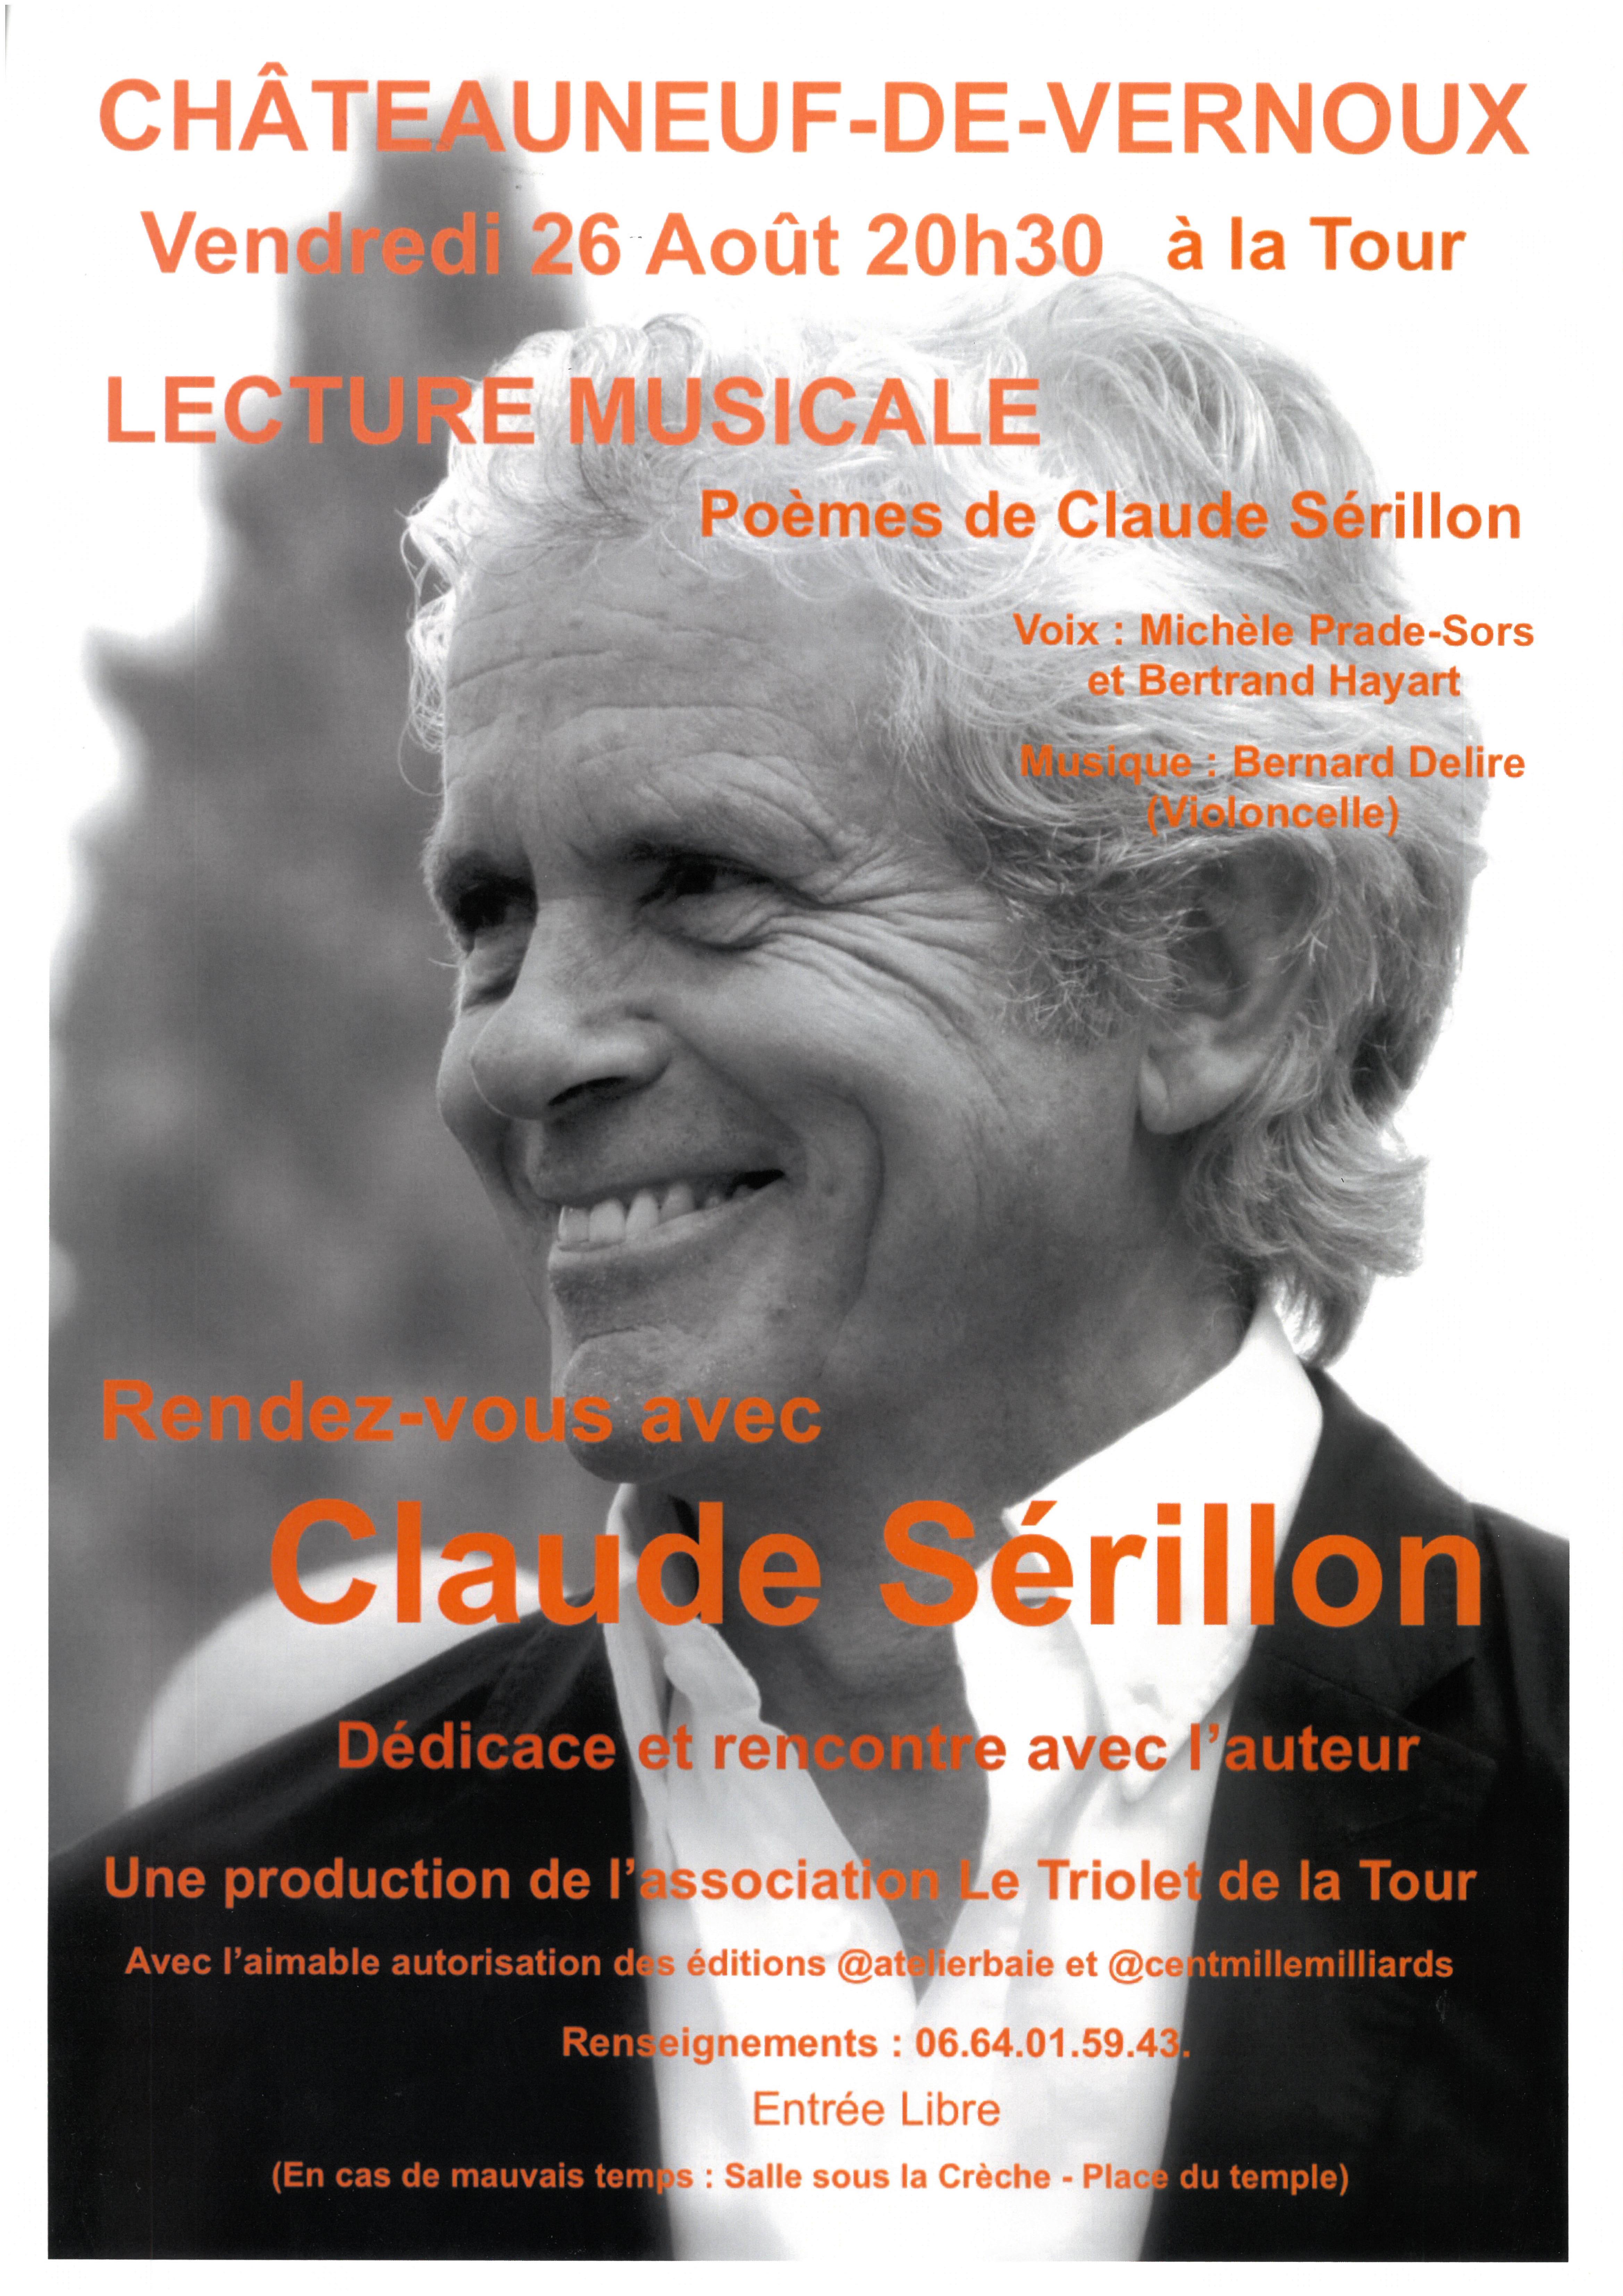 Alle leuke evenementen! : Lecture musicale Poèmes de Claude Sérillon